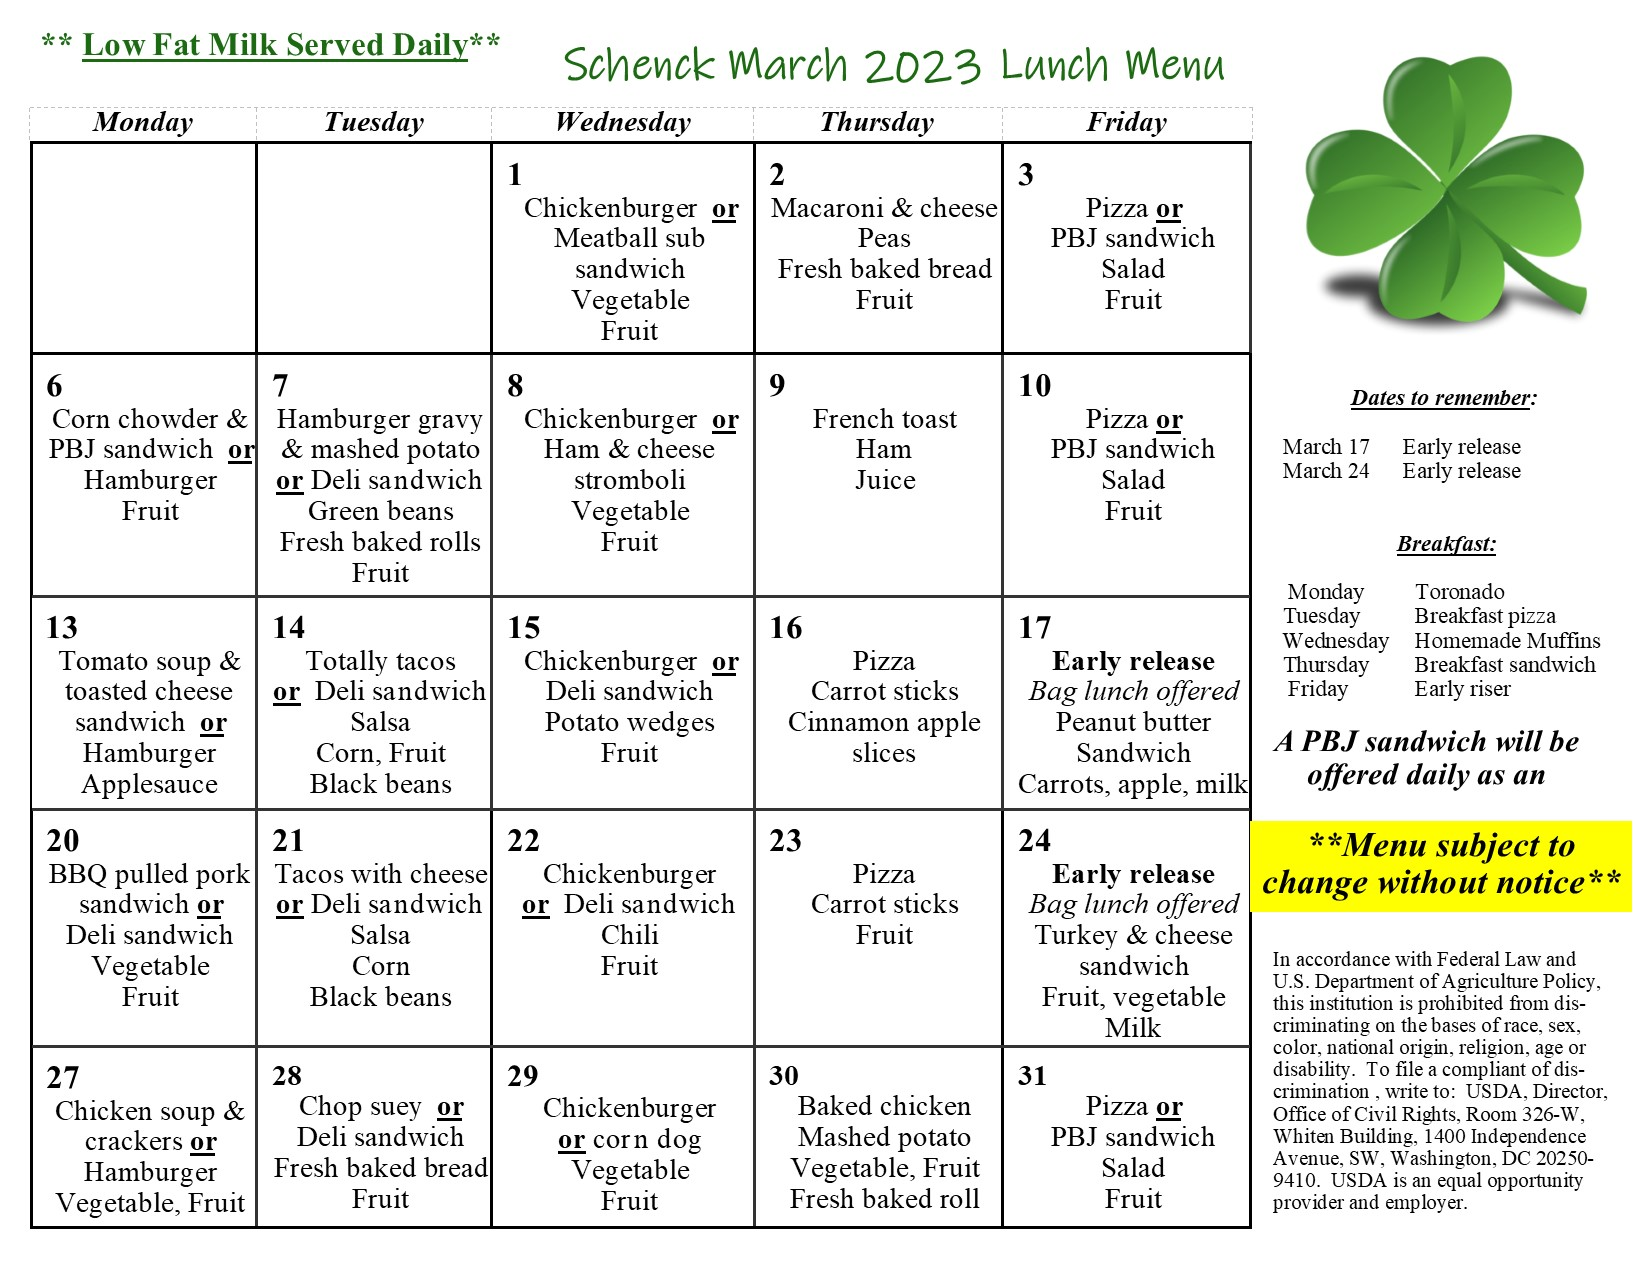 Schenck High School lunch menu for March 2023